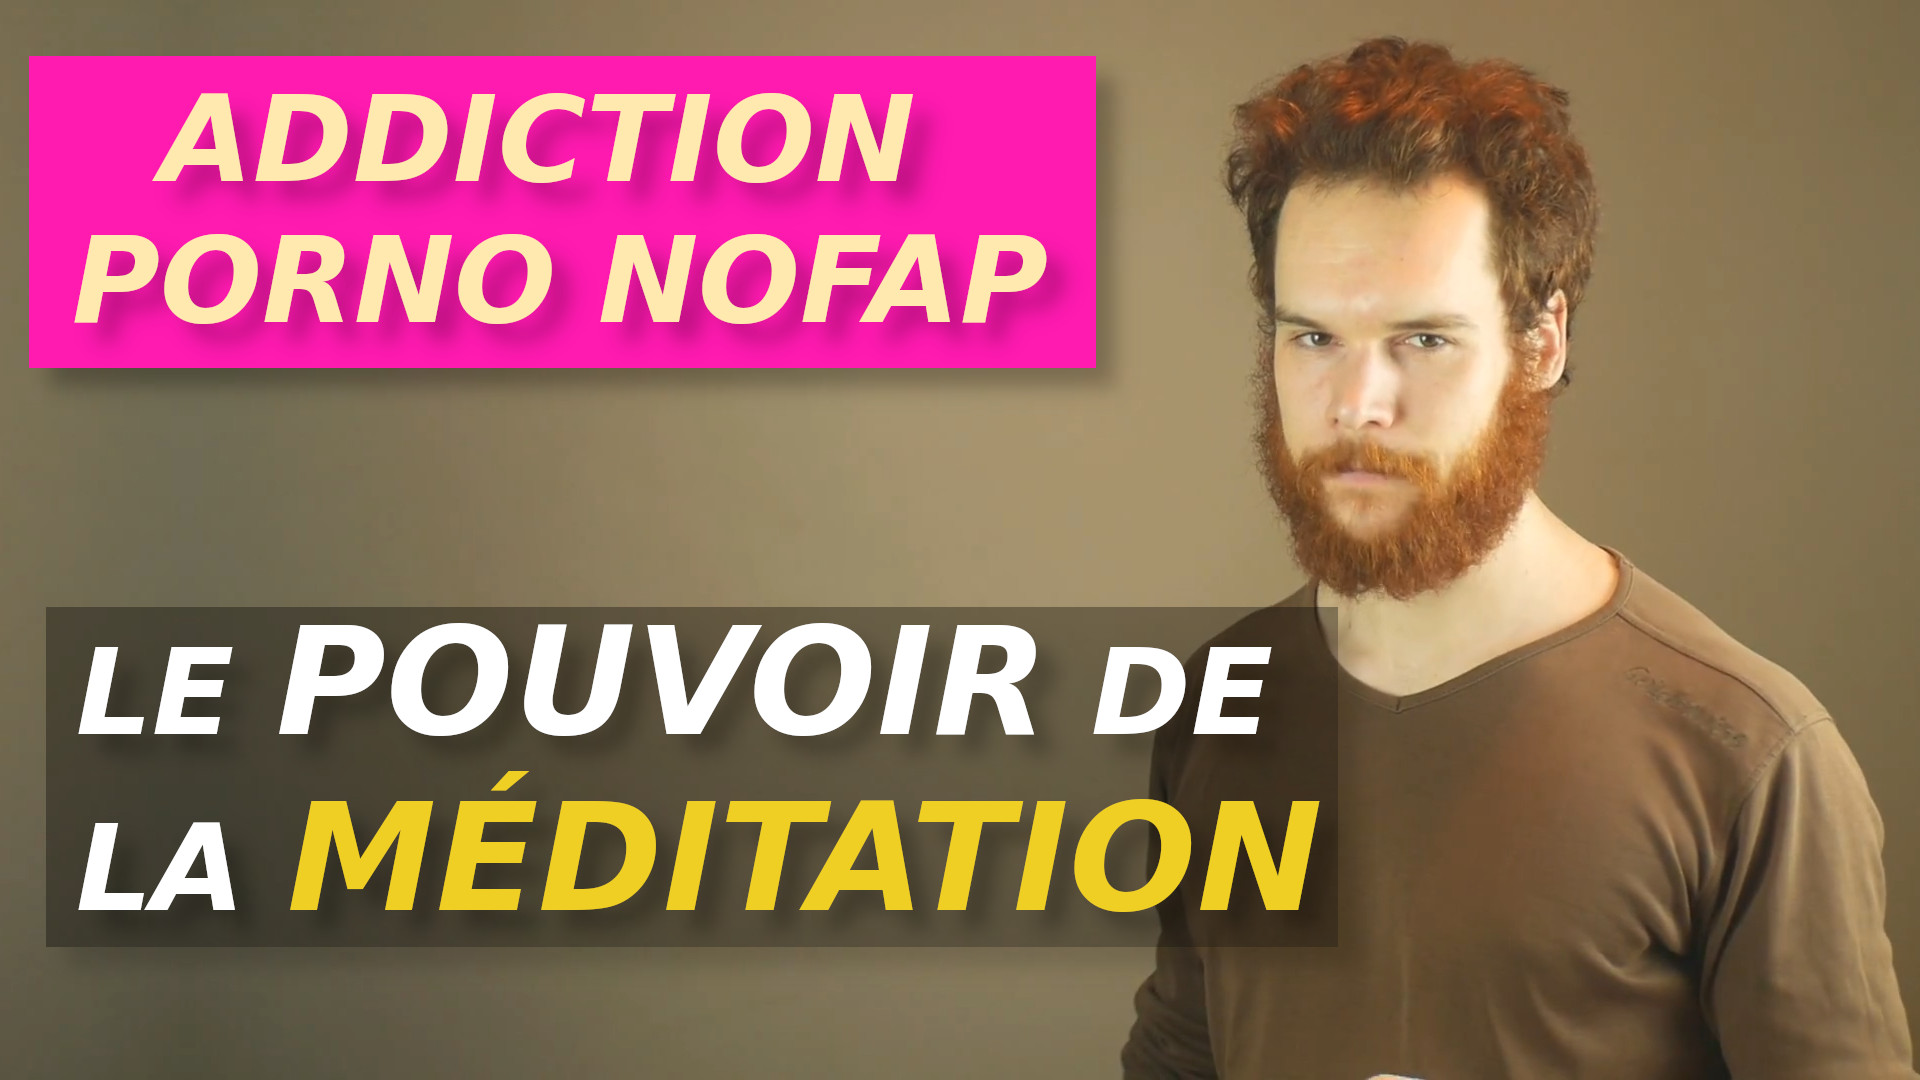 NoFap, Porno, Branlette, Addiction Le Pouvoir de la Méditation #0168 Vidéos de Développement Personnel photo